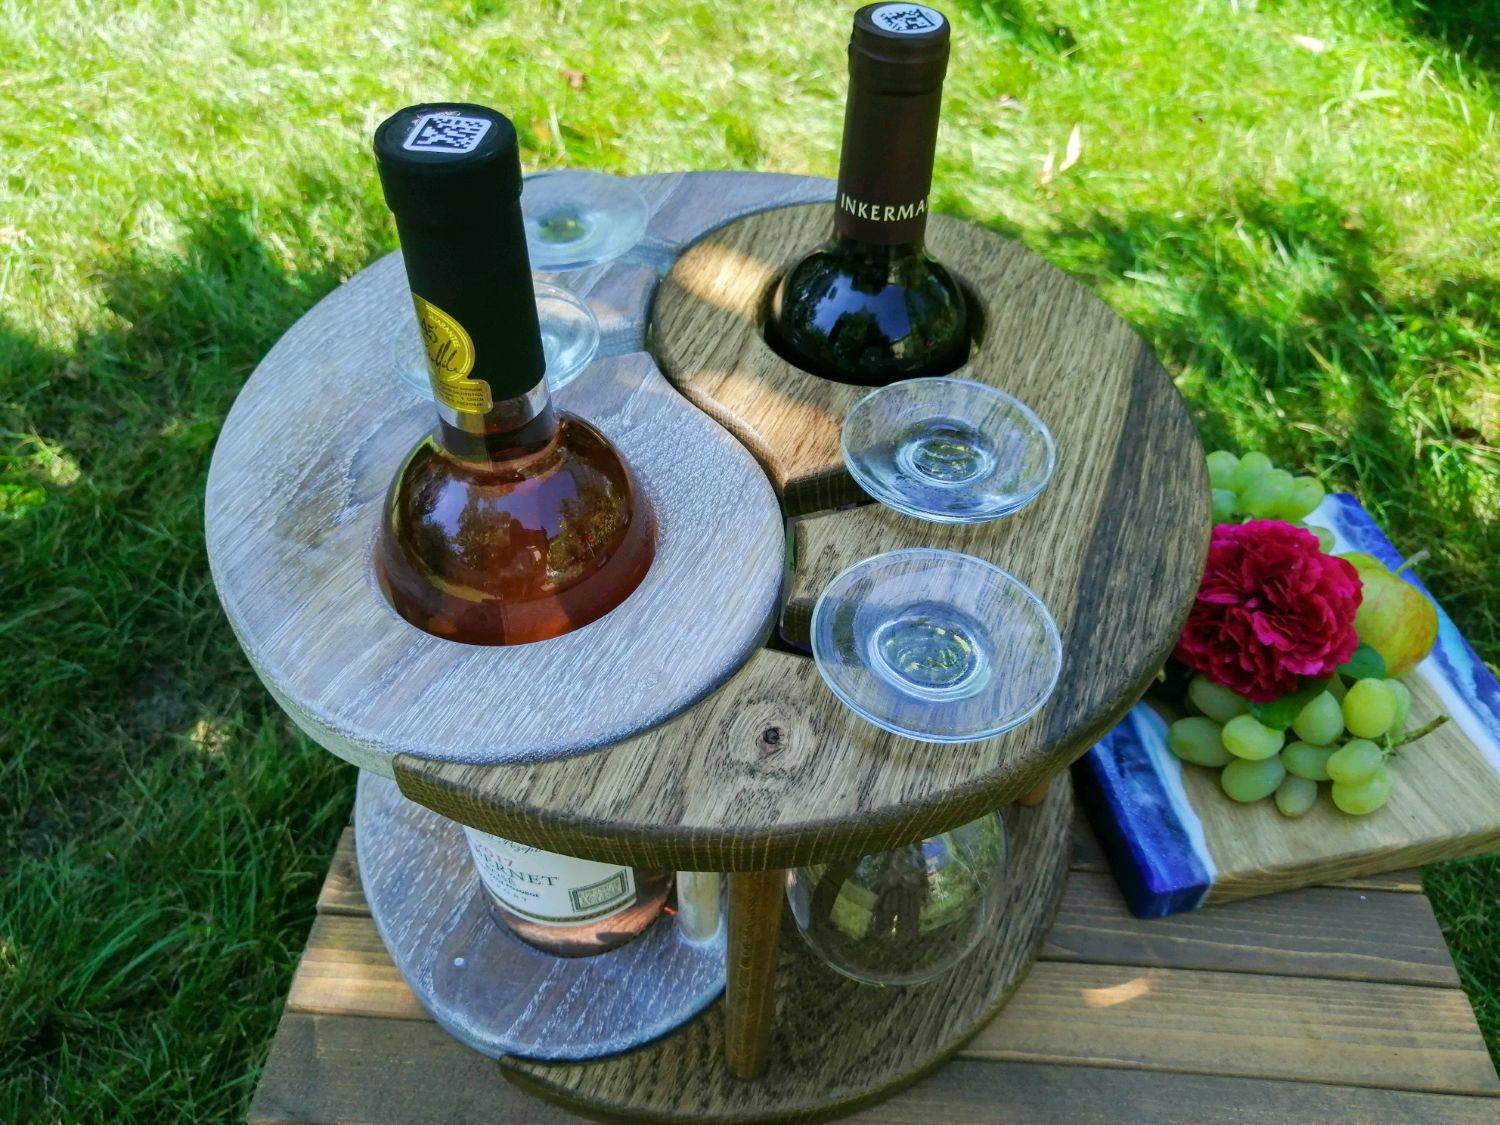 Деревянные держатели для винных бутылок: пять оригинальных проектов